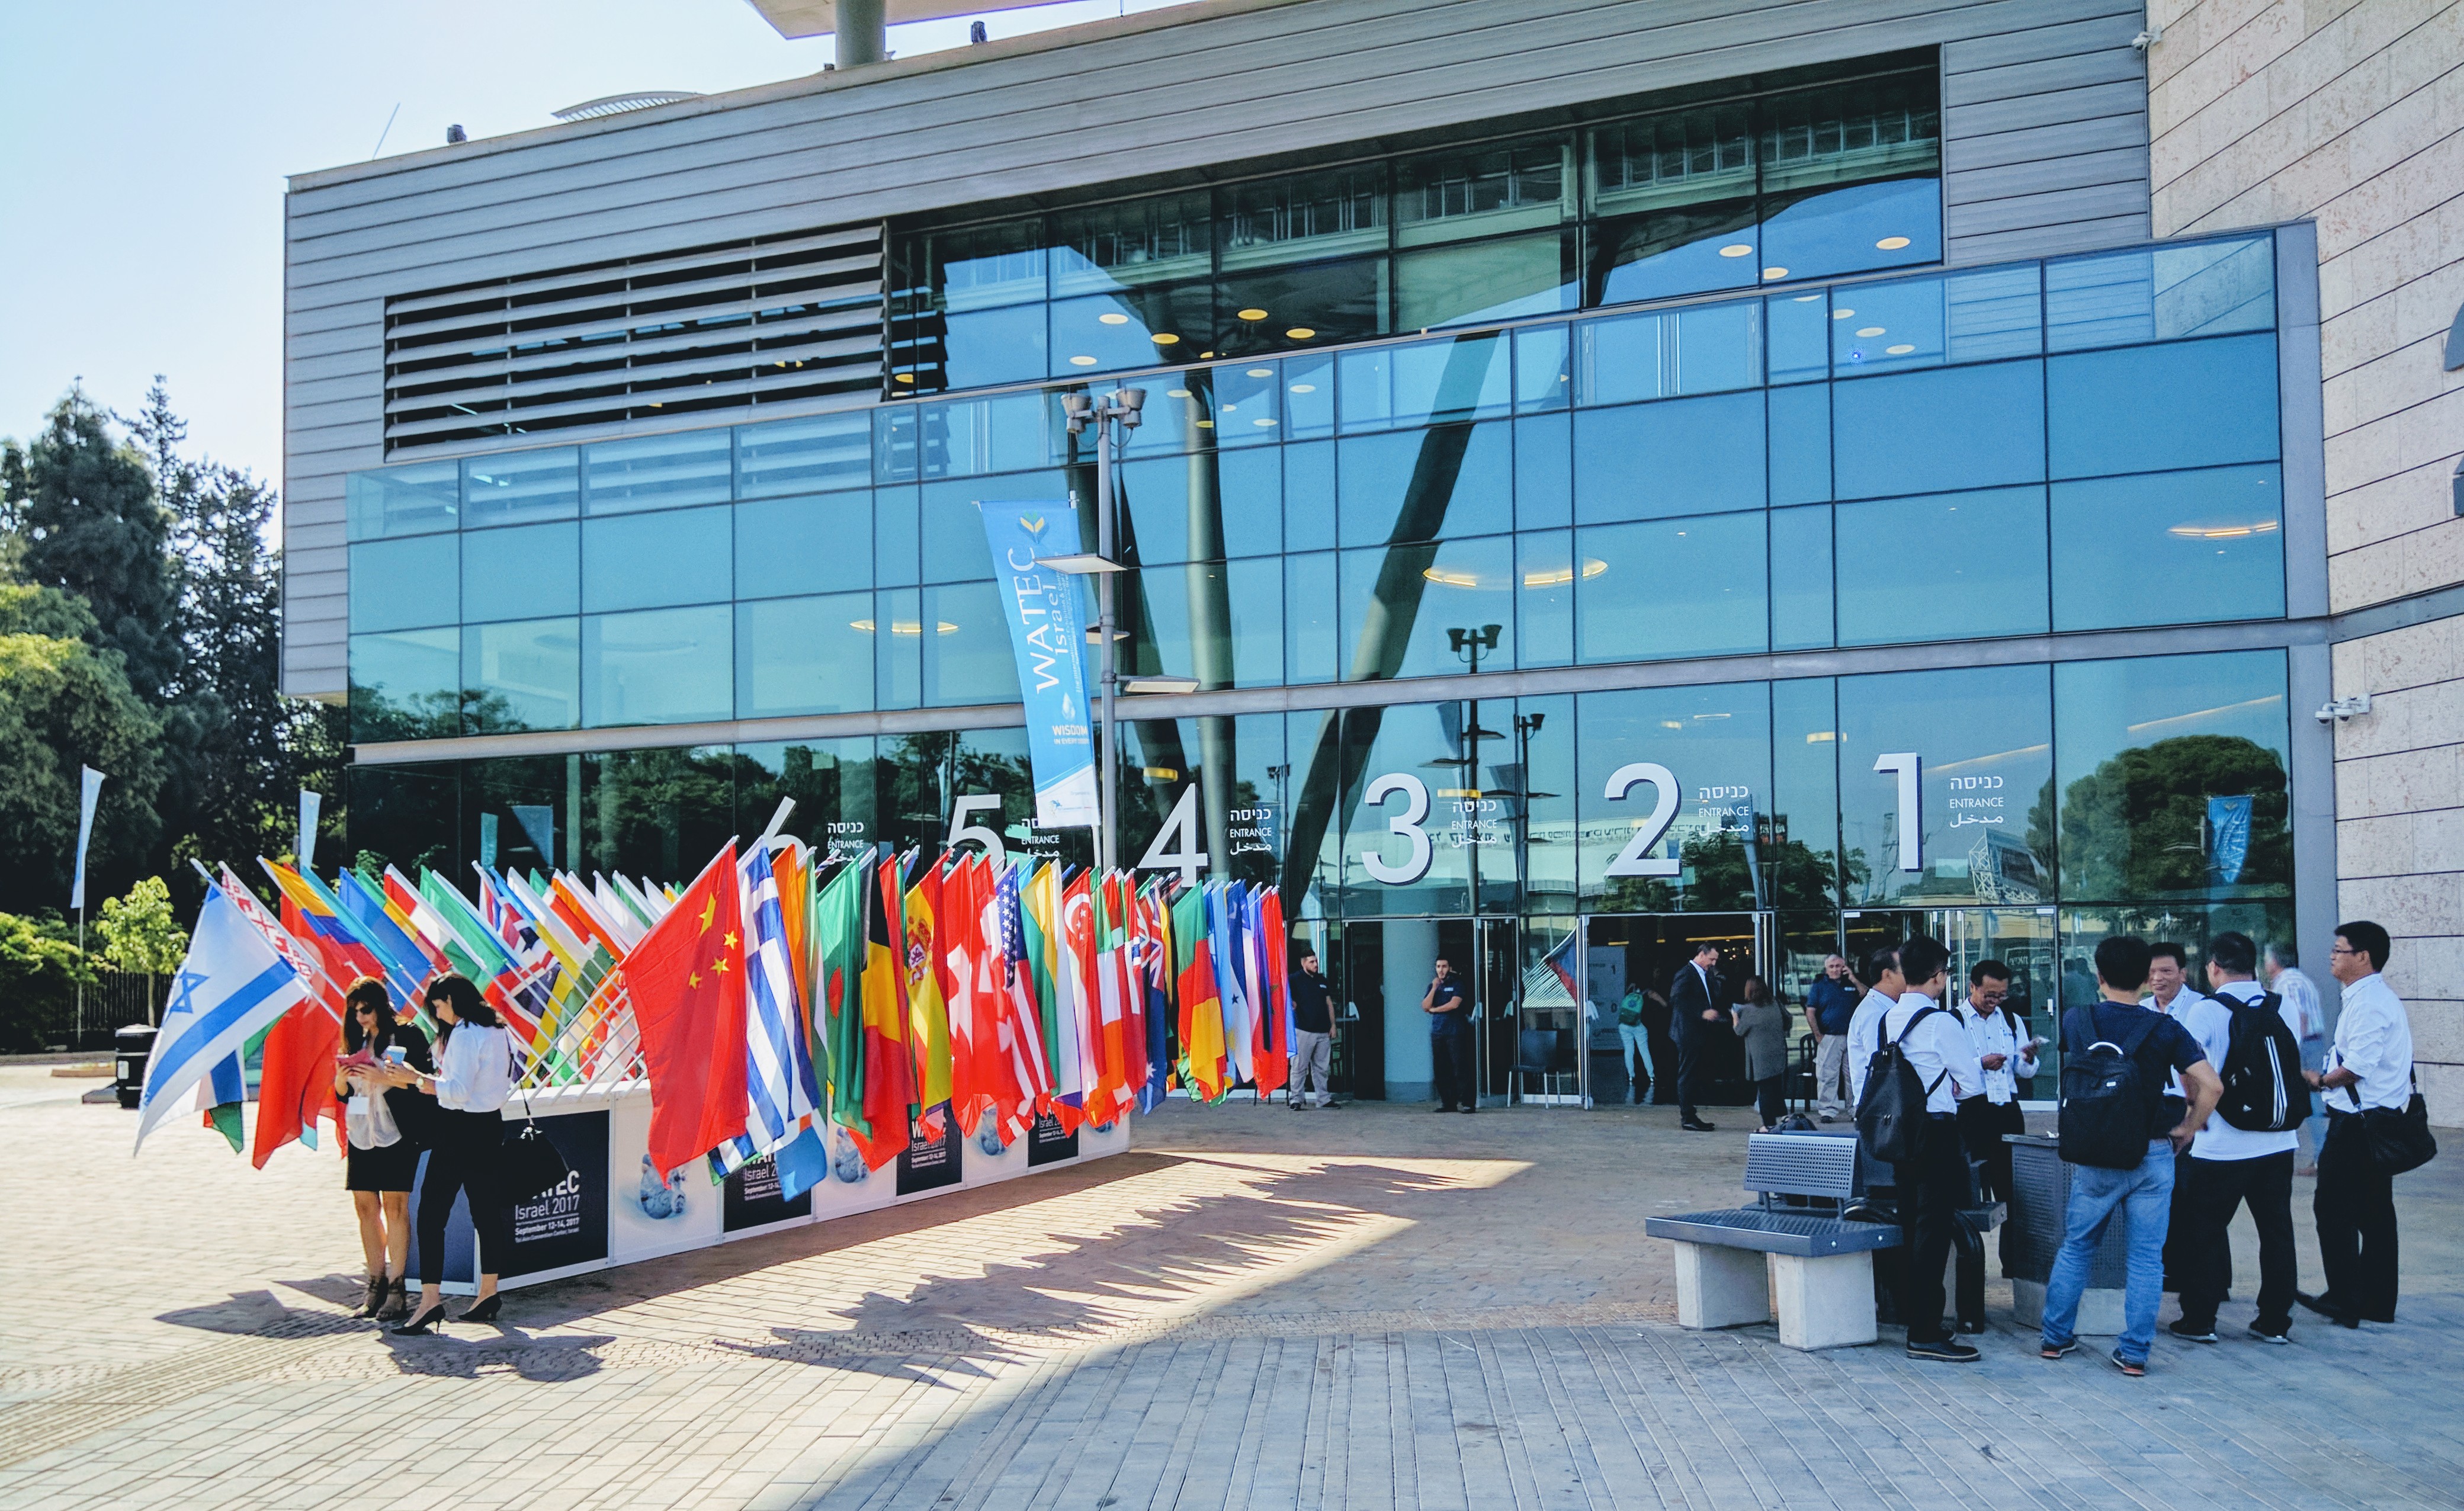 WATEC 2019 opens in Tel Aviv